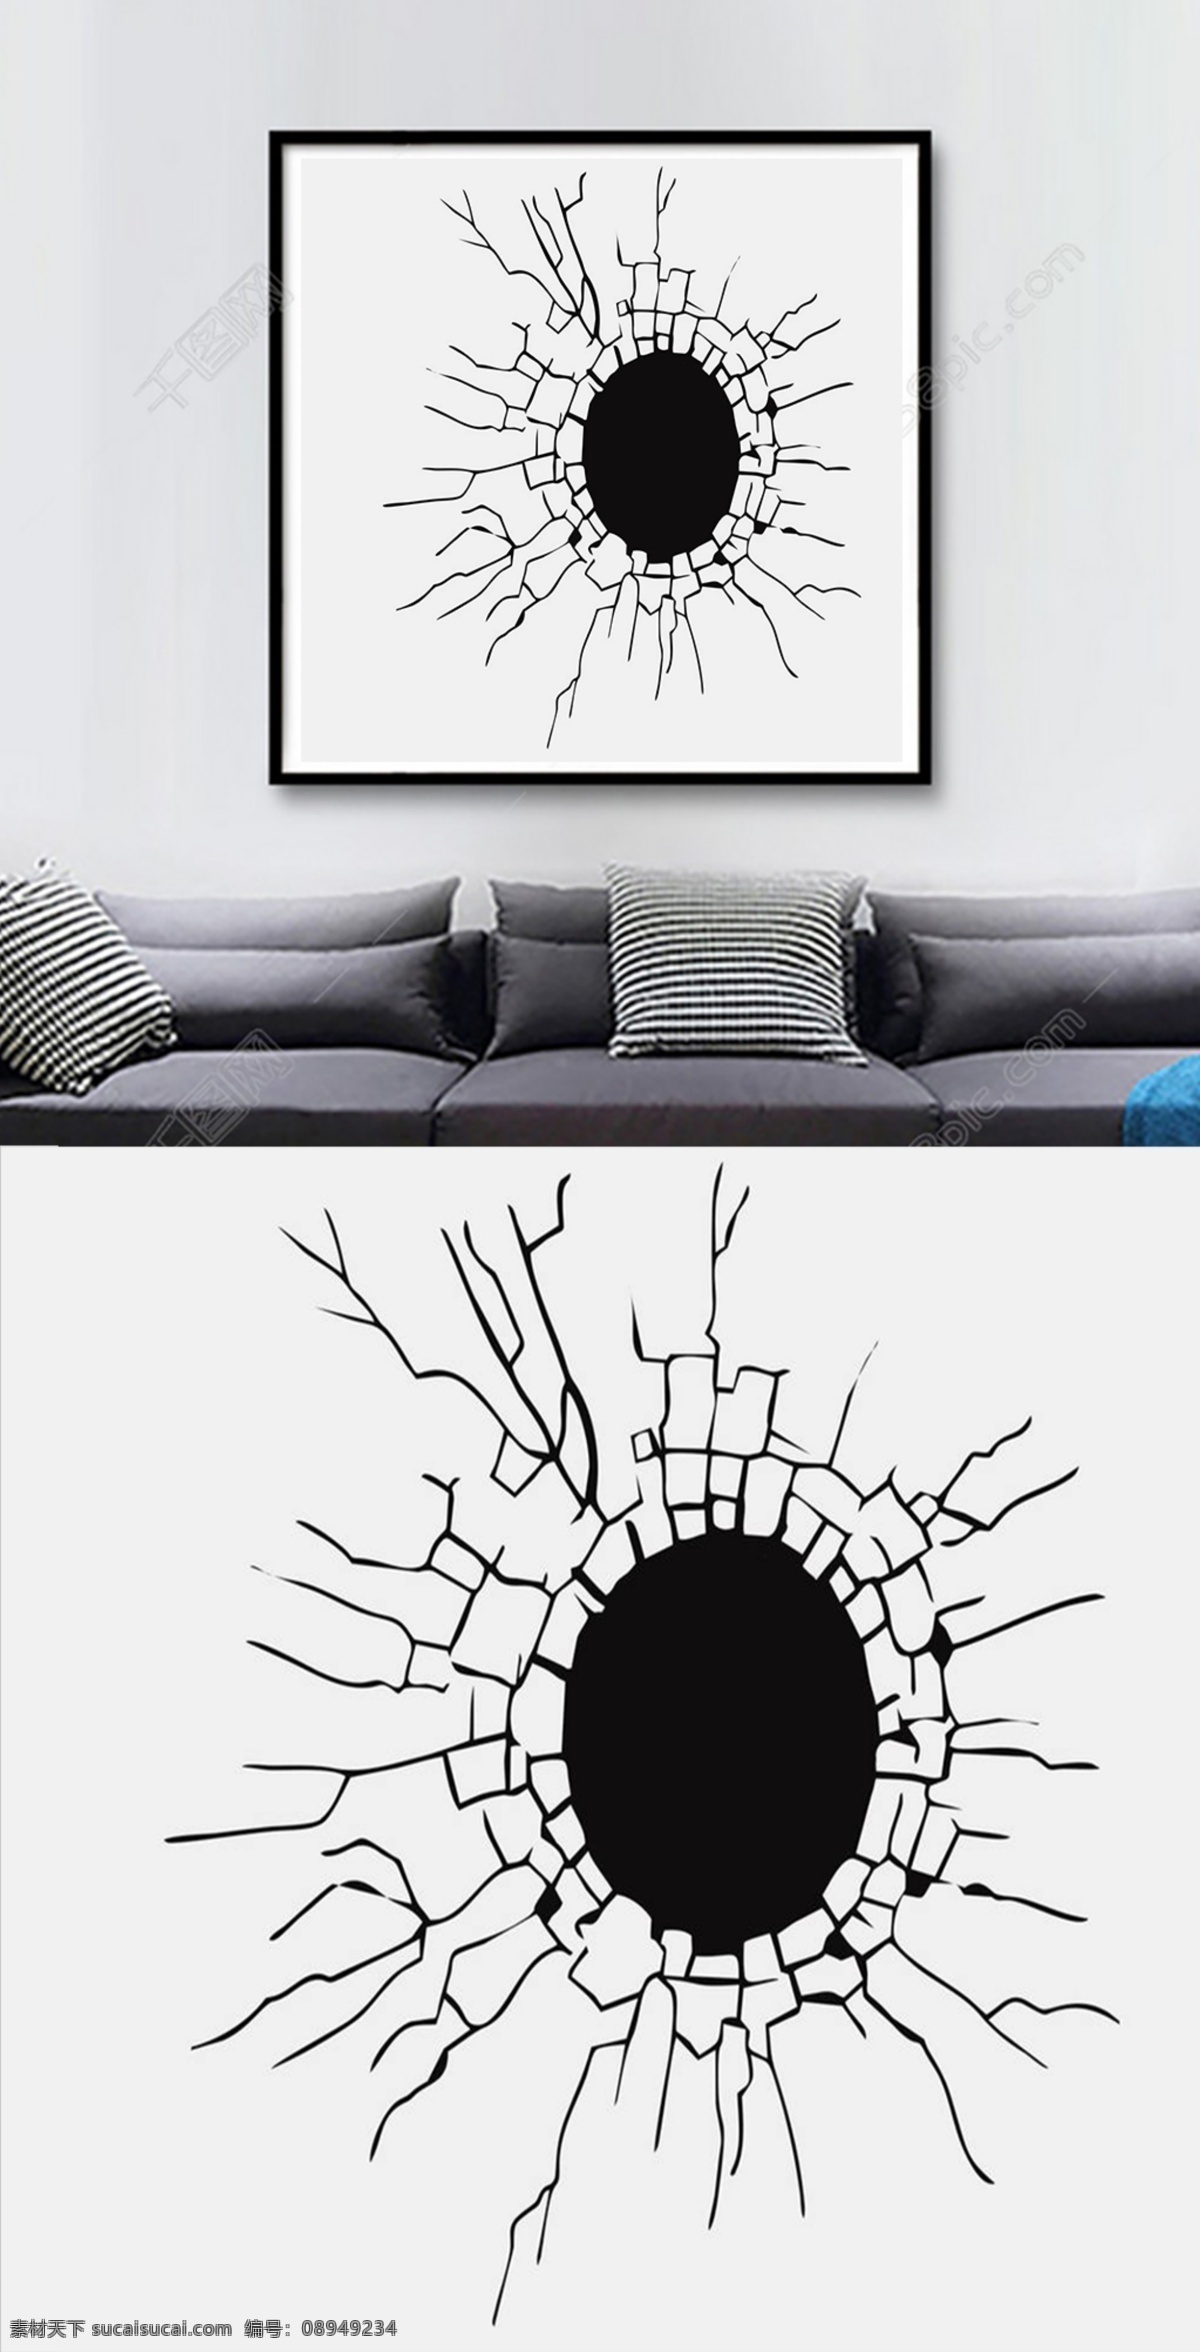 方 图 创意 现代 客厅 装饰画 方图 黑白 破洞